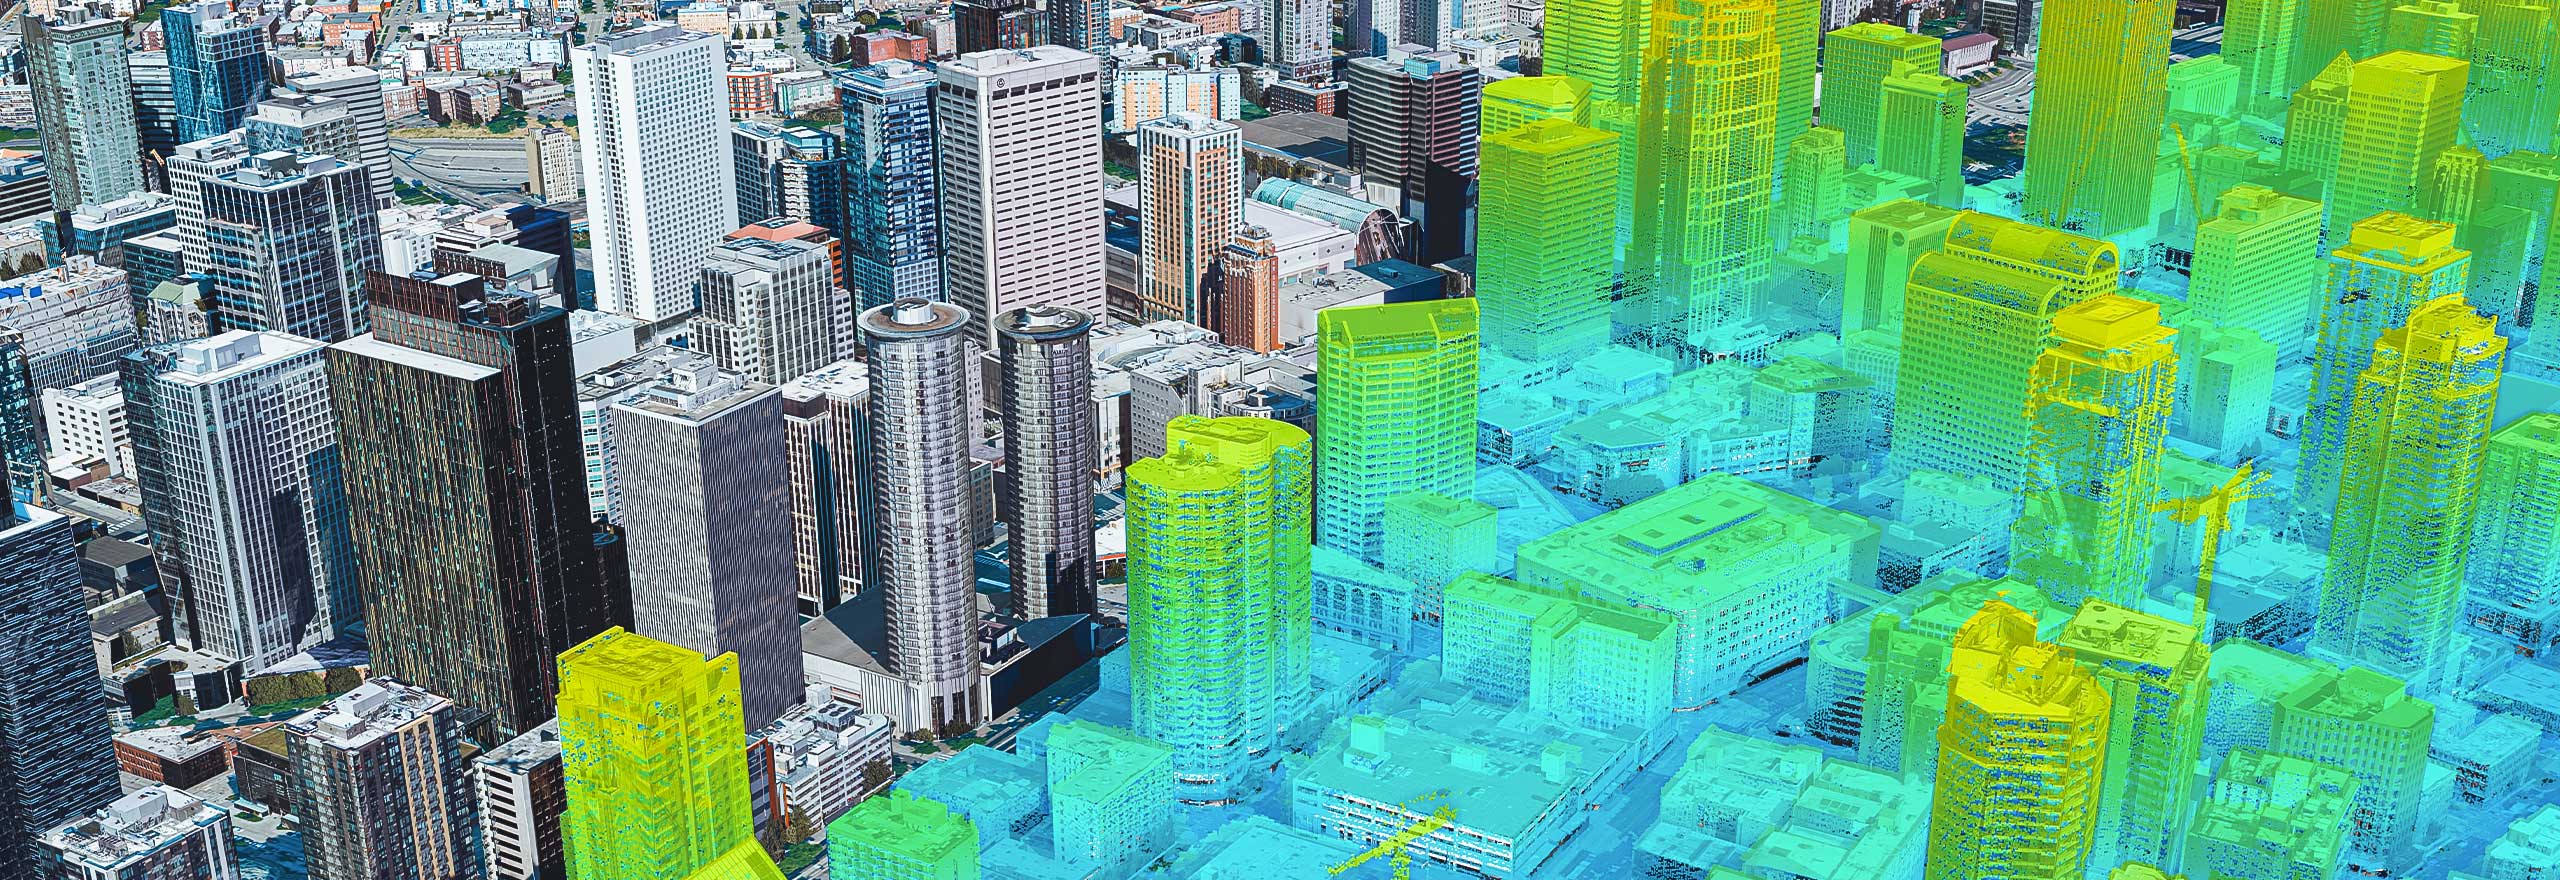 3D-LiDAR- und Bilddaten aus der Luft, erfasst mit CityMapper 